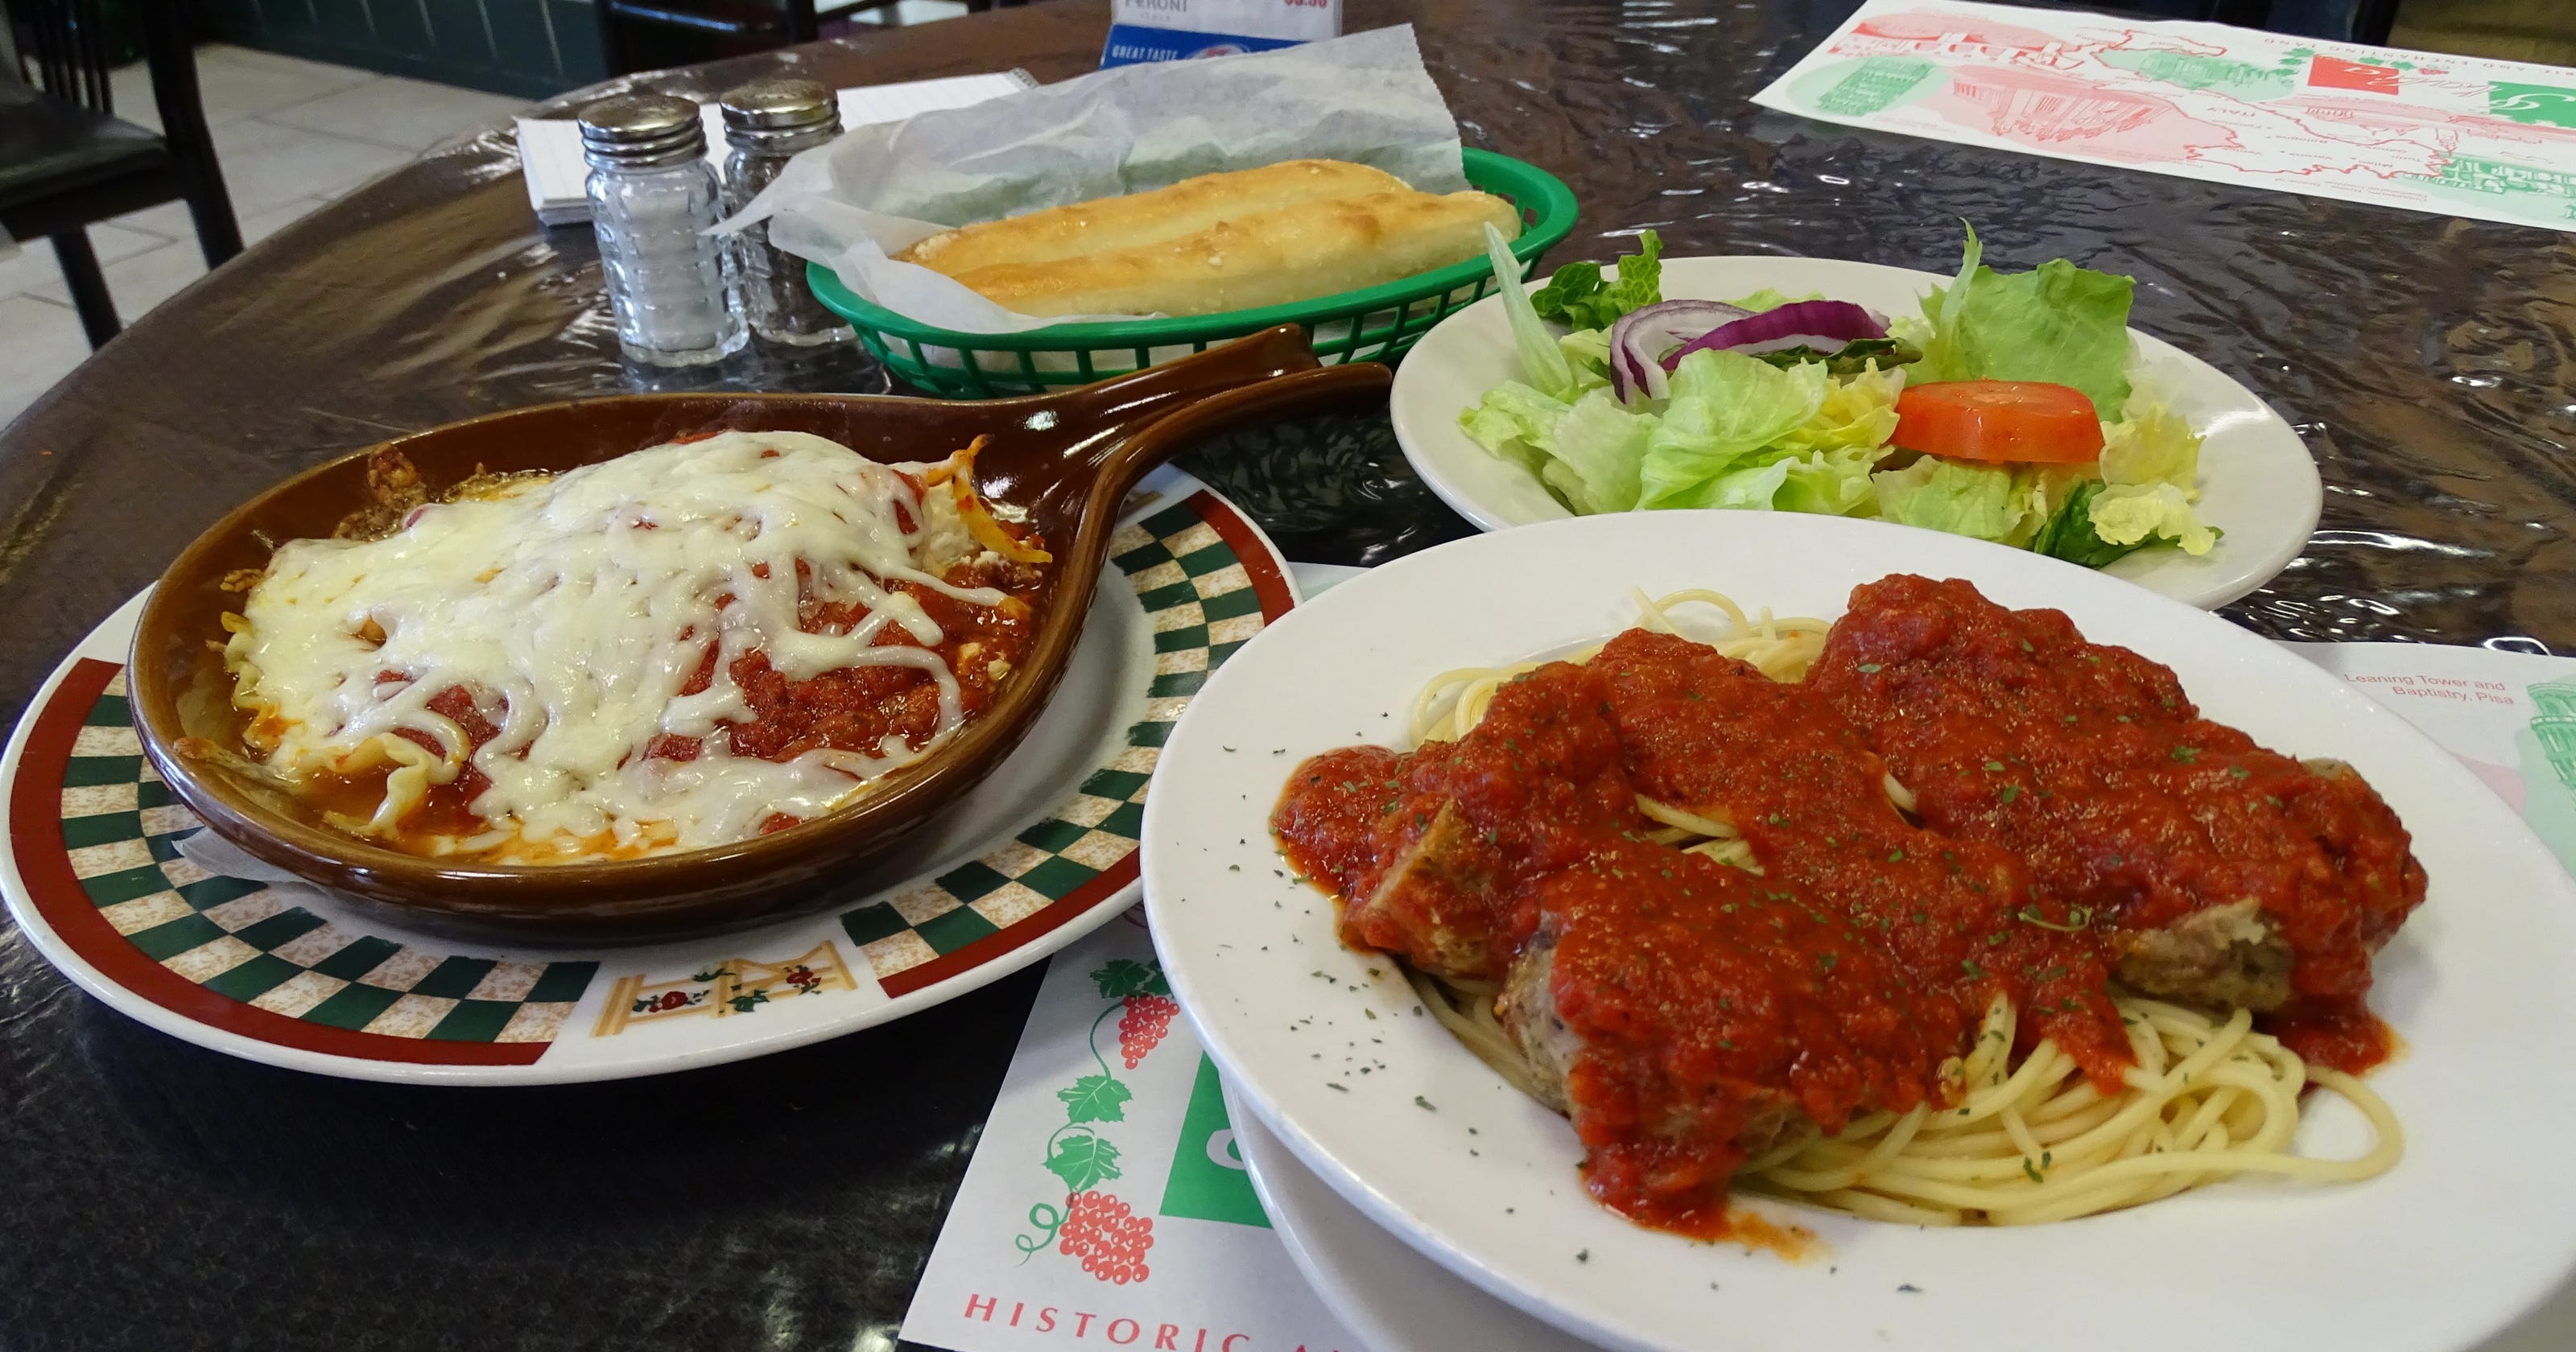 Picnic Pizza Italian Eatery celebrates 25 years